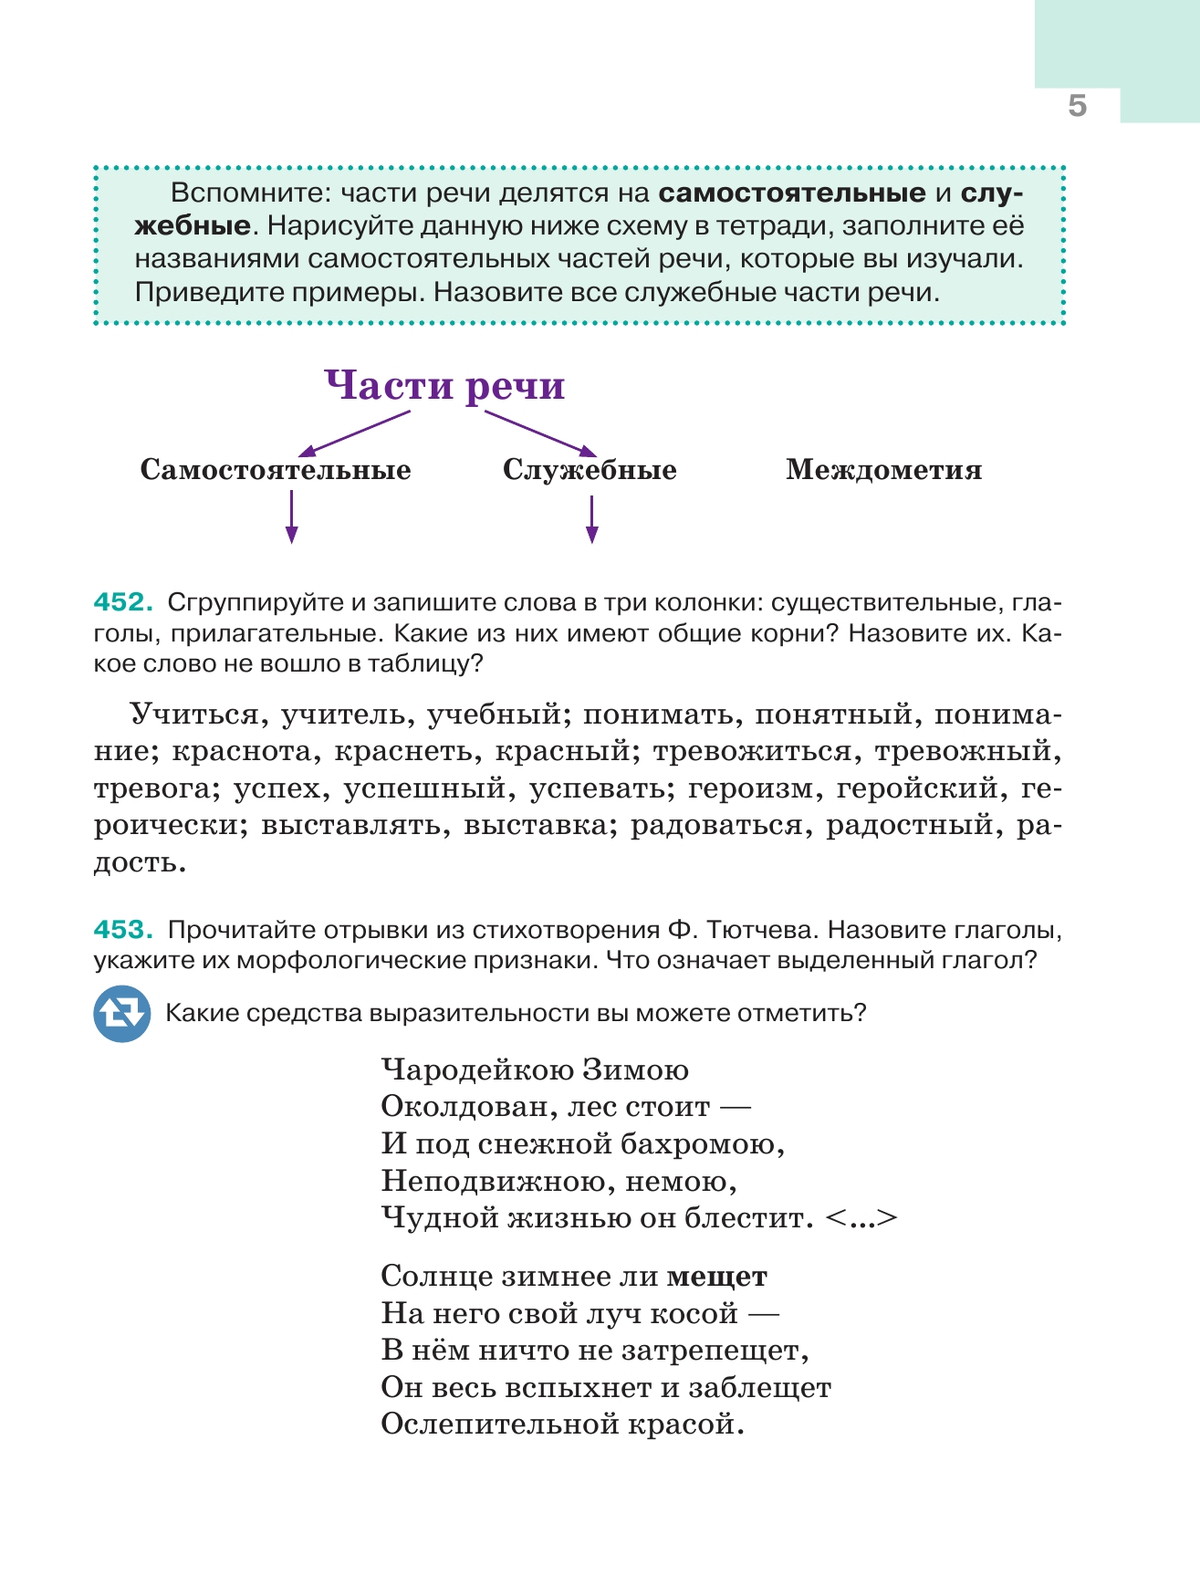 Русский язык. 5 класс. Учебник. В 2-х ч. Ч. 2 11